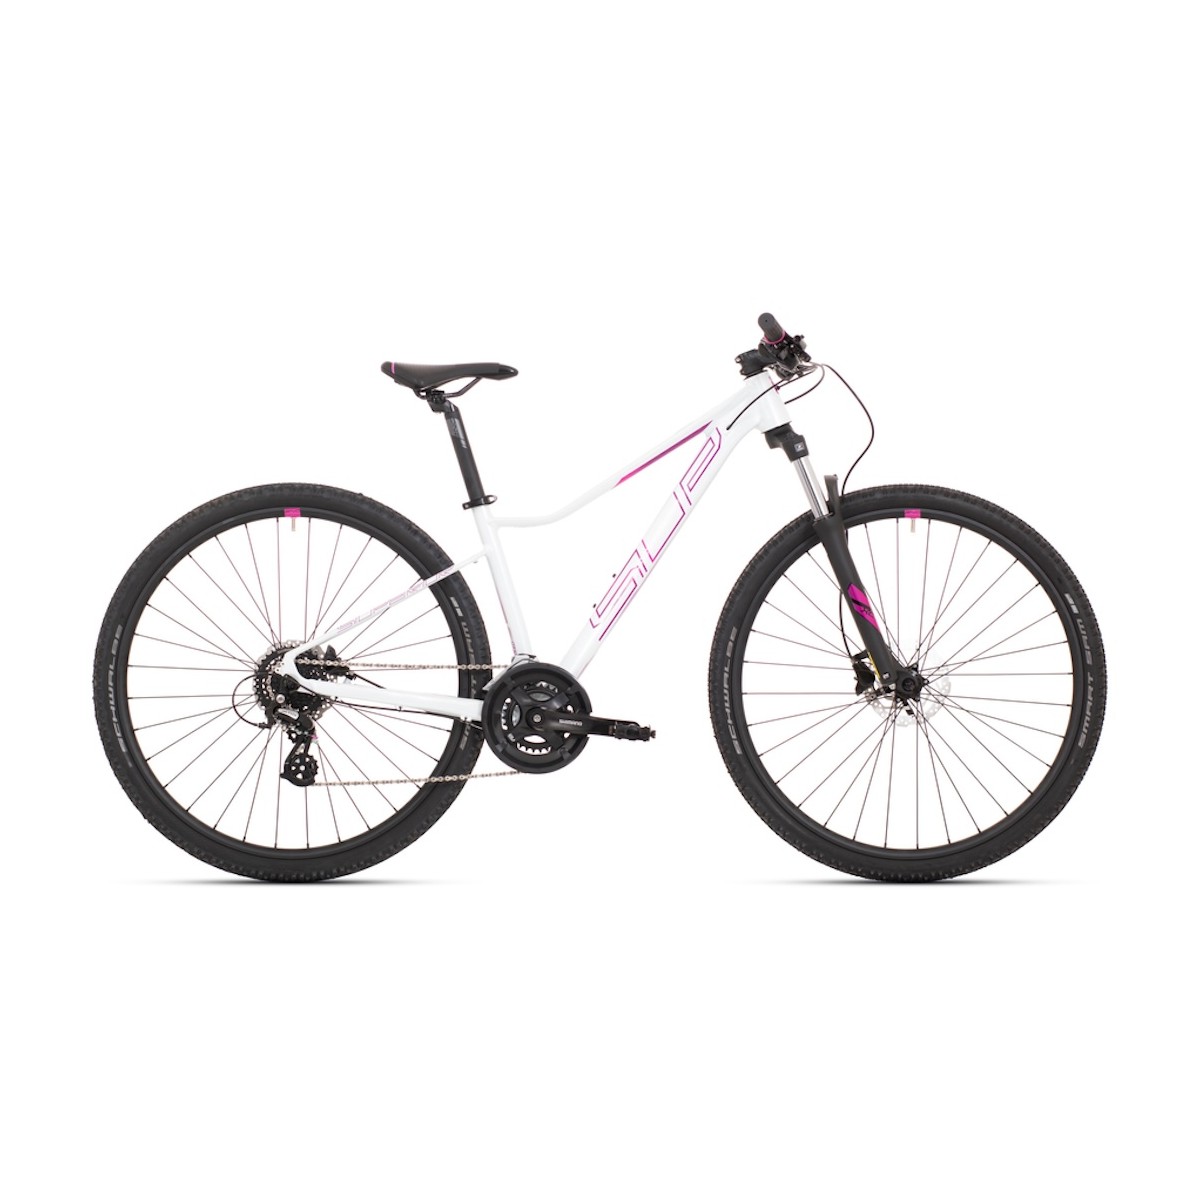 SUPERIOR XC 819 W 29 sieviešu velosipēds - balta/rozā - 2022